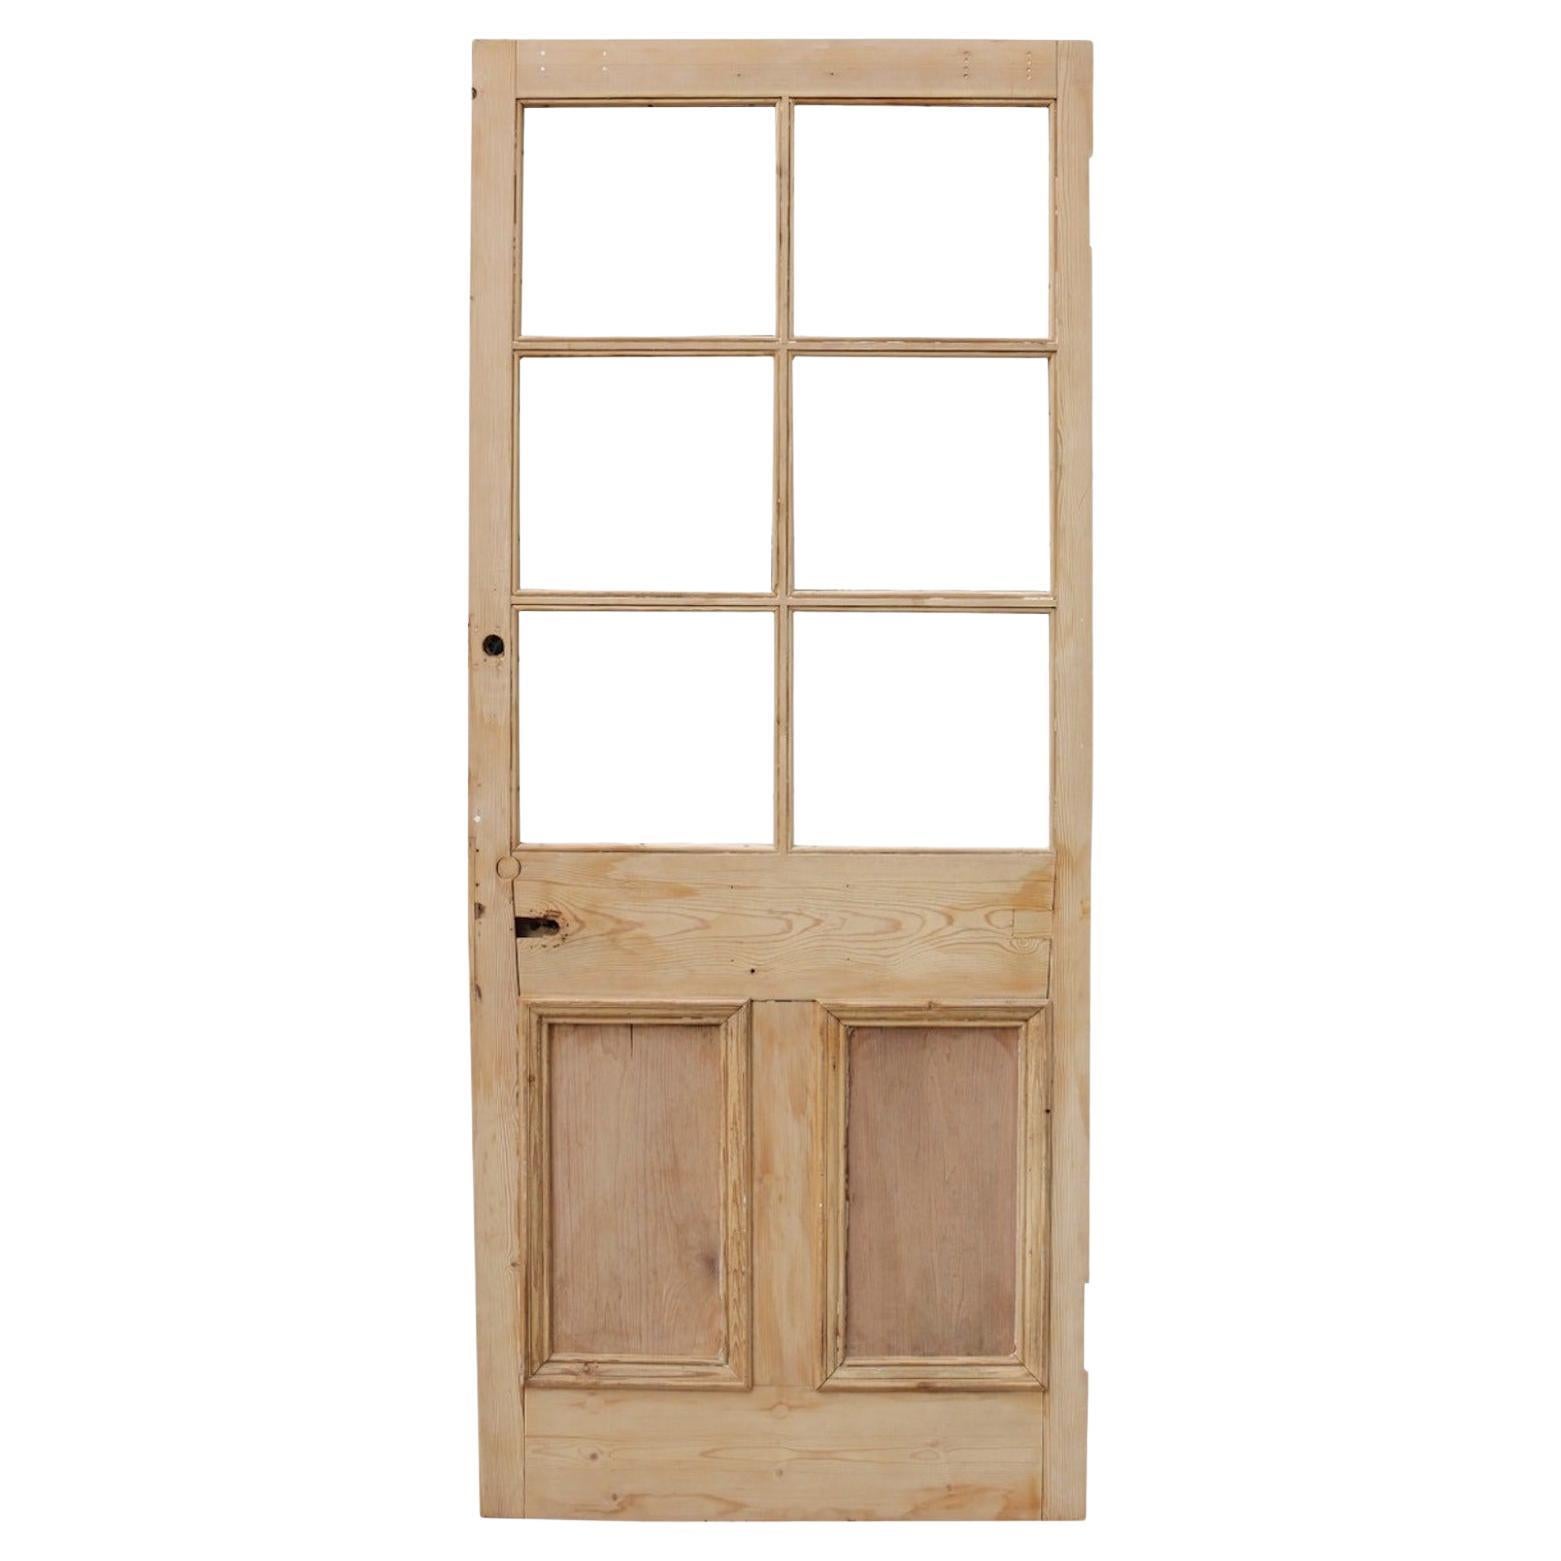 Reclaimed Glazed Wooden Pine Door For Sale